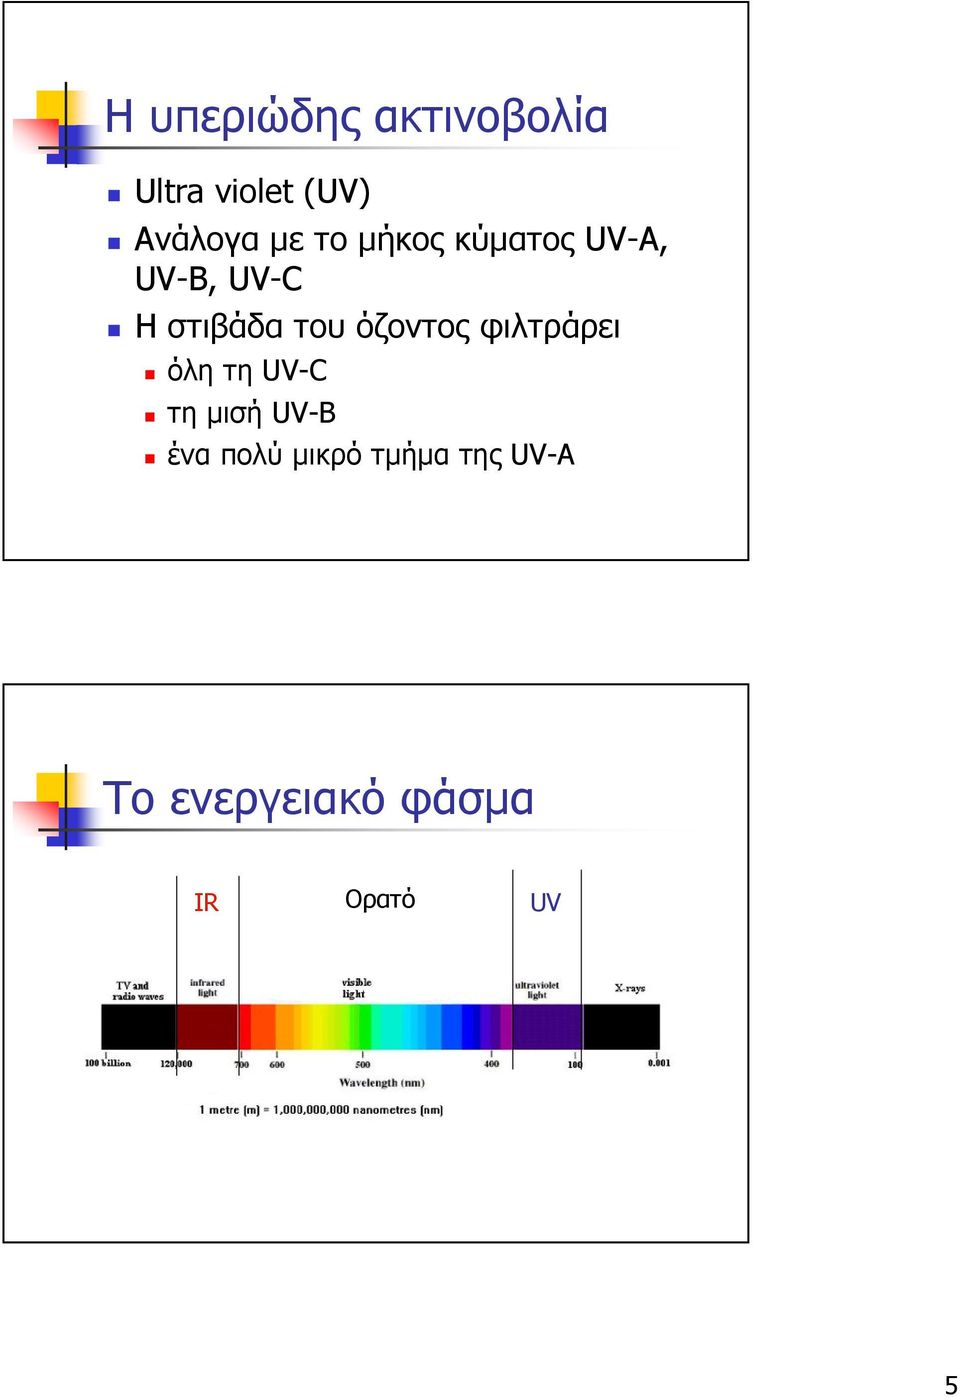 όζοντος φιλτράρει όλη τη UV-C τη µισή UV-B ένα πολύ